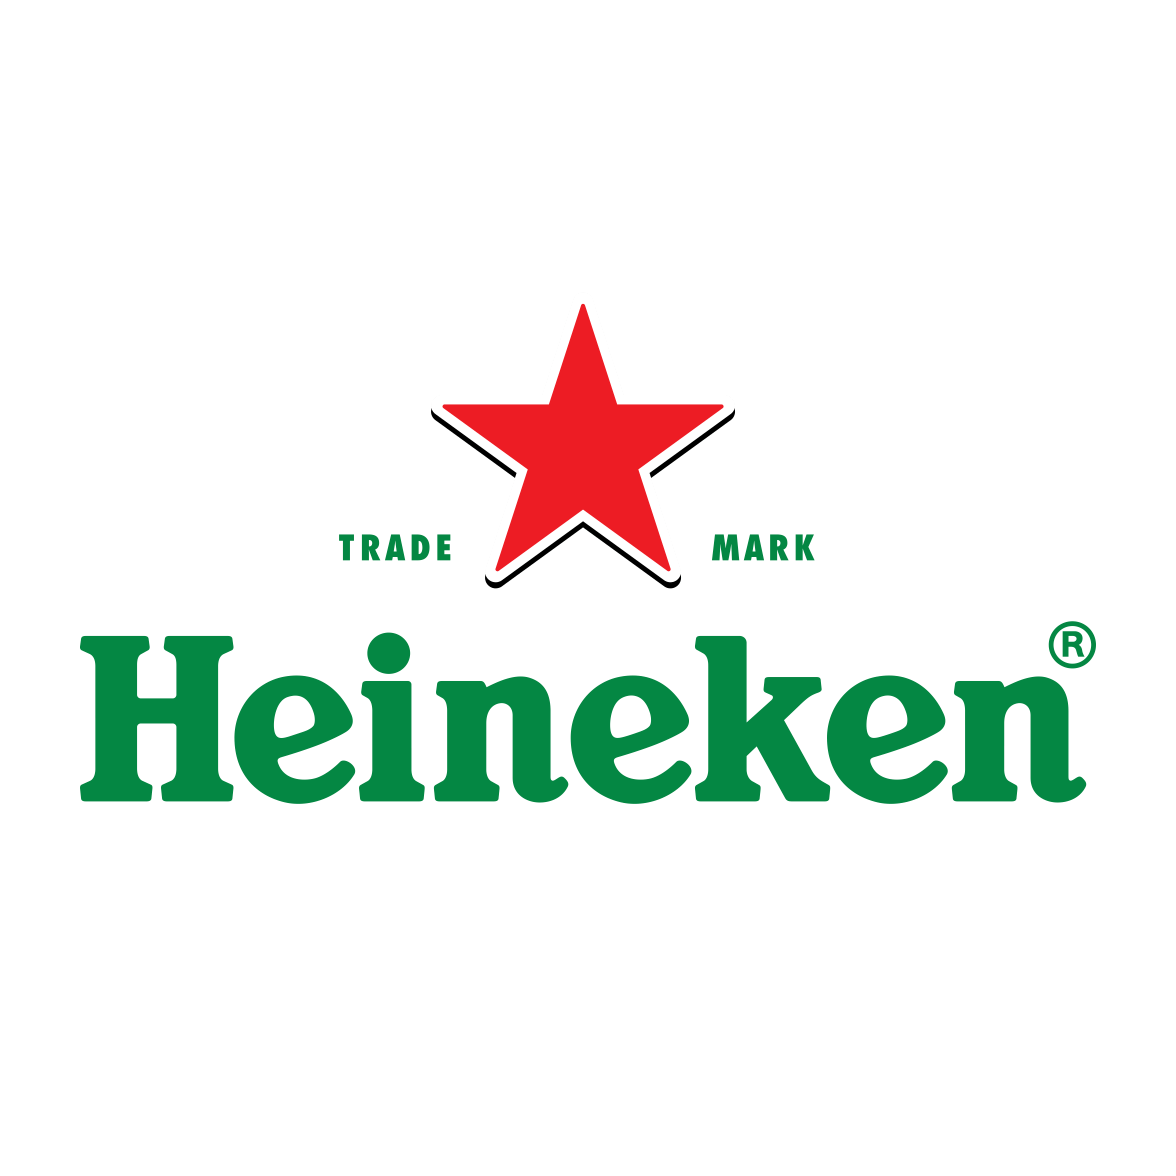 Heineken - sprrawdź wszystkie promocje